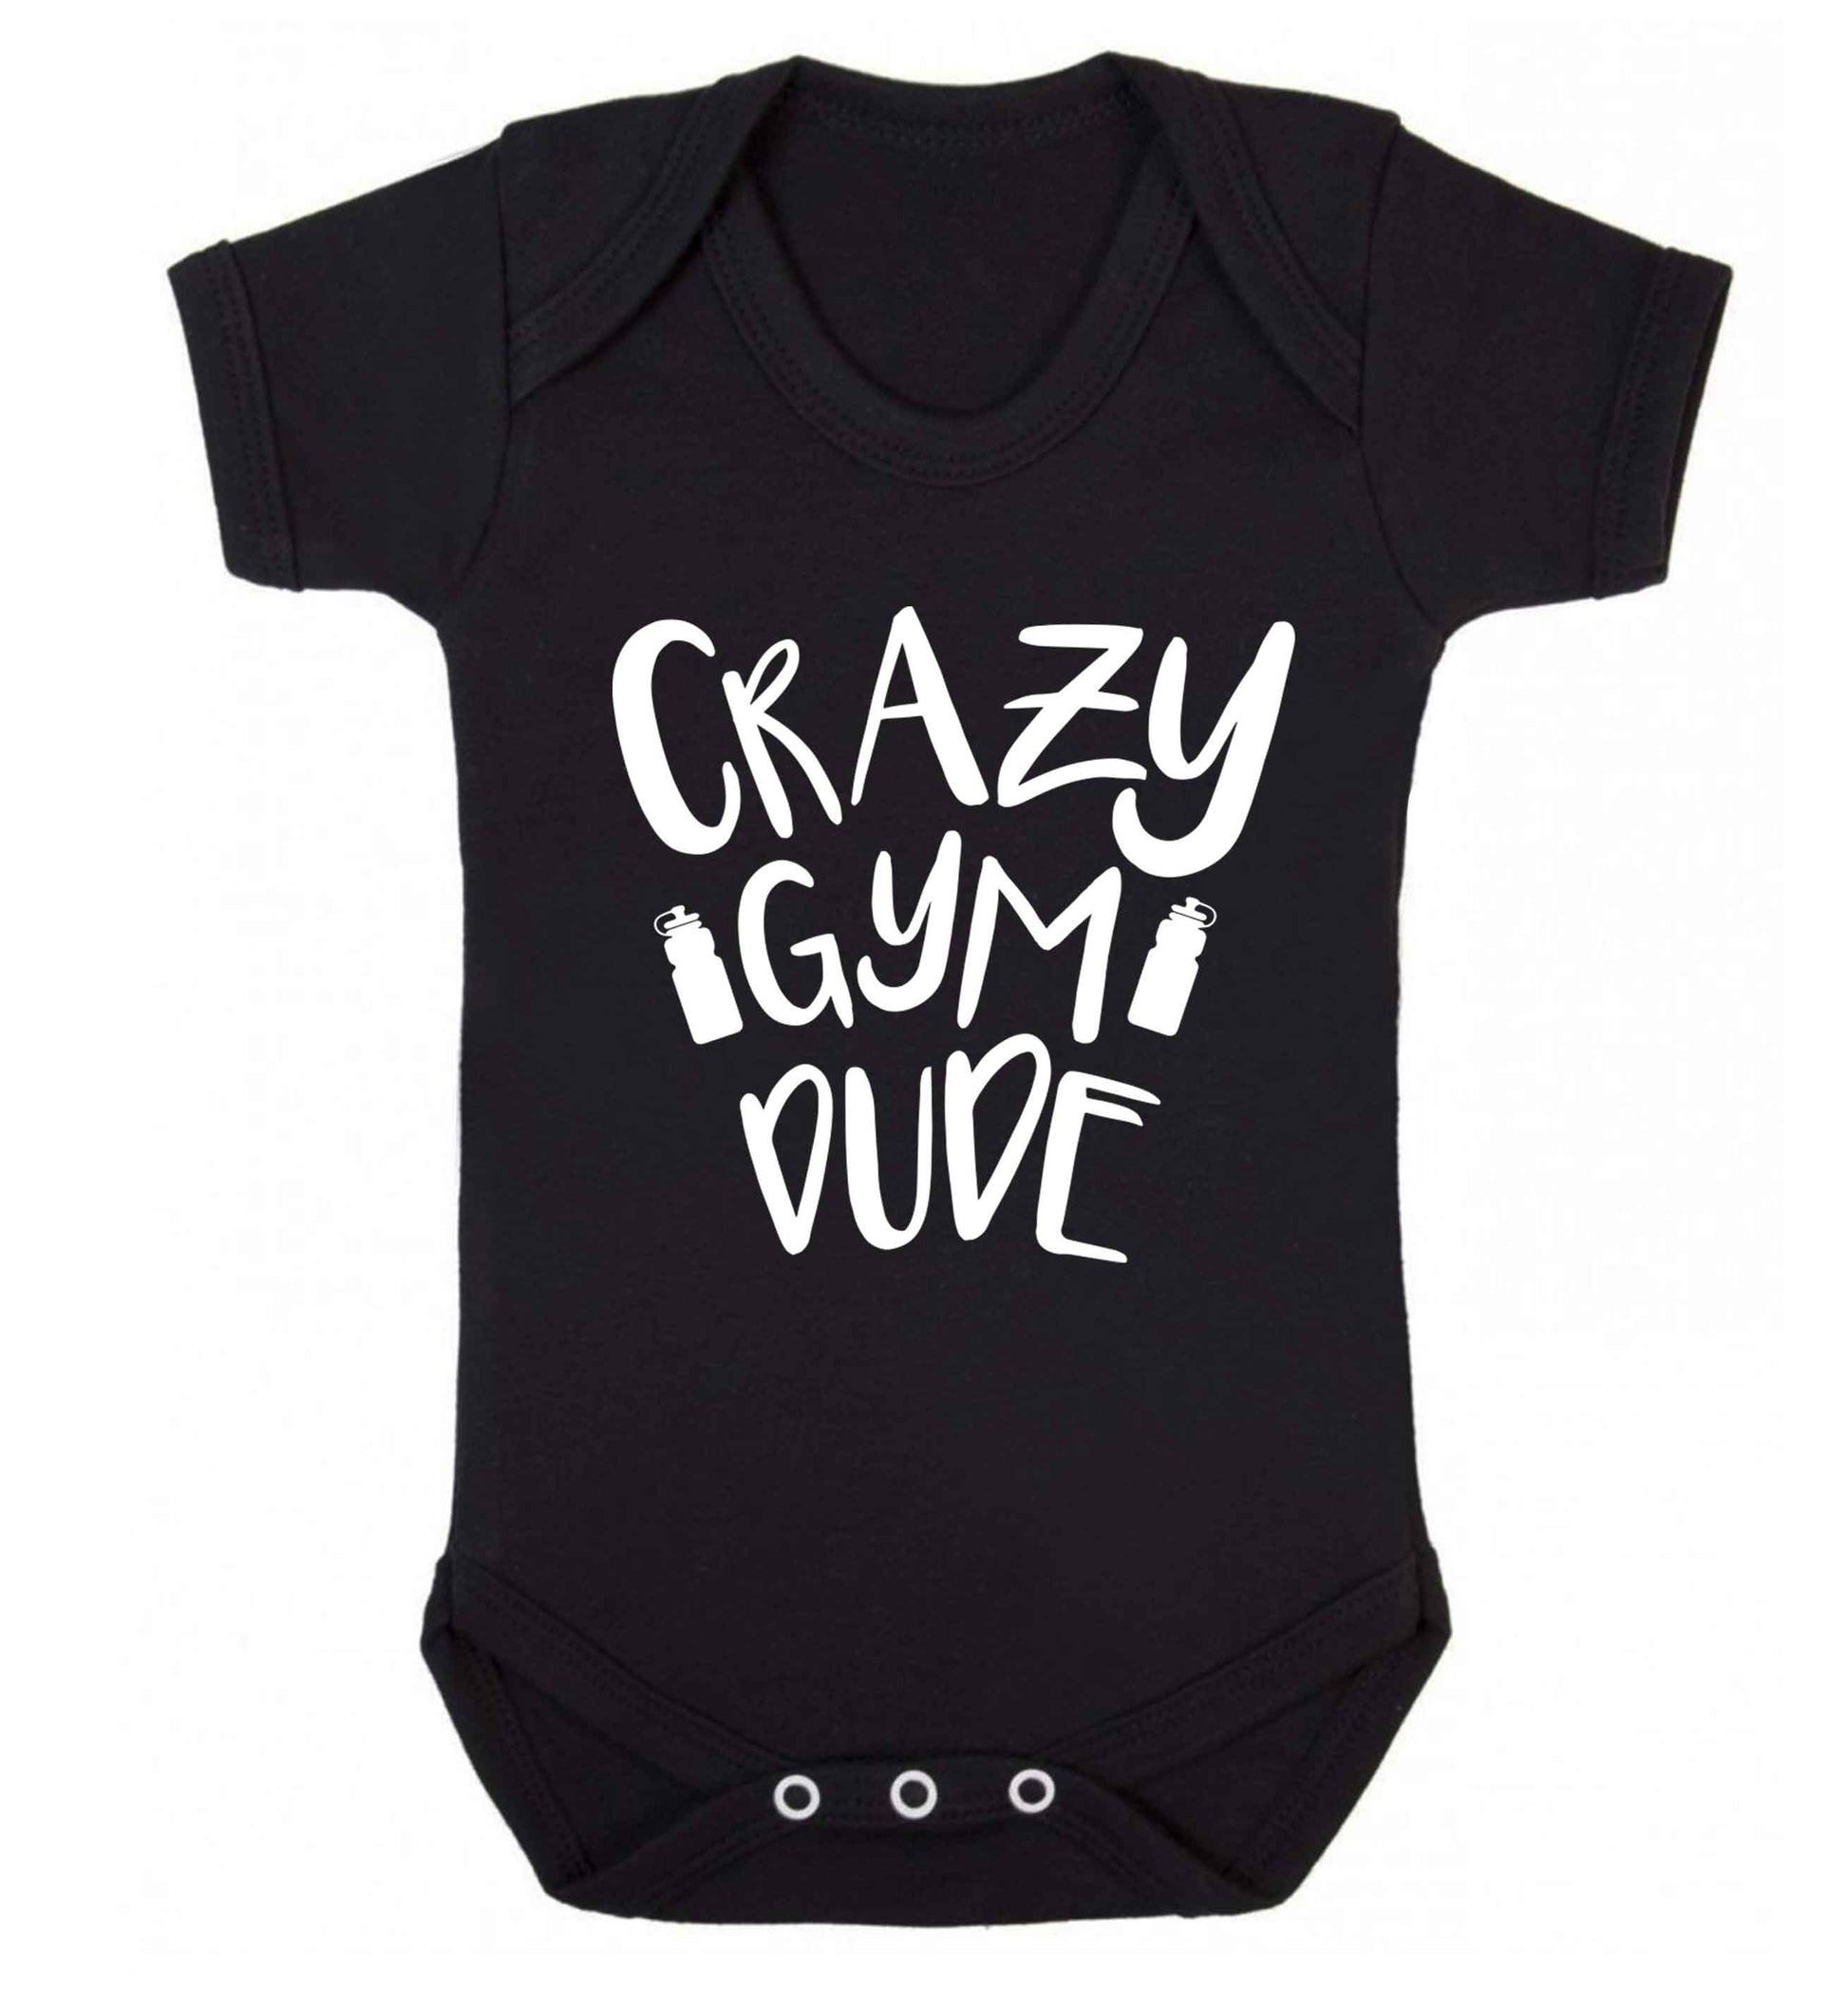 Crazy gym dude Baby Vest black 18-24 months